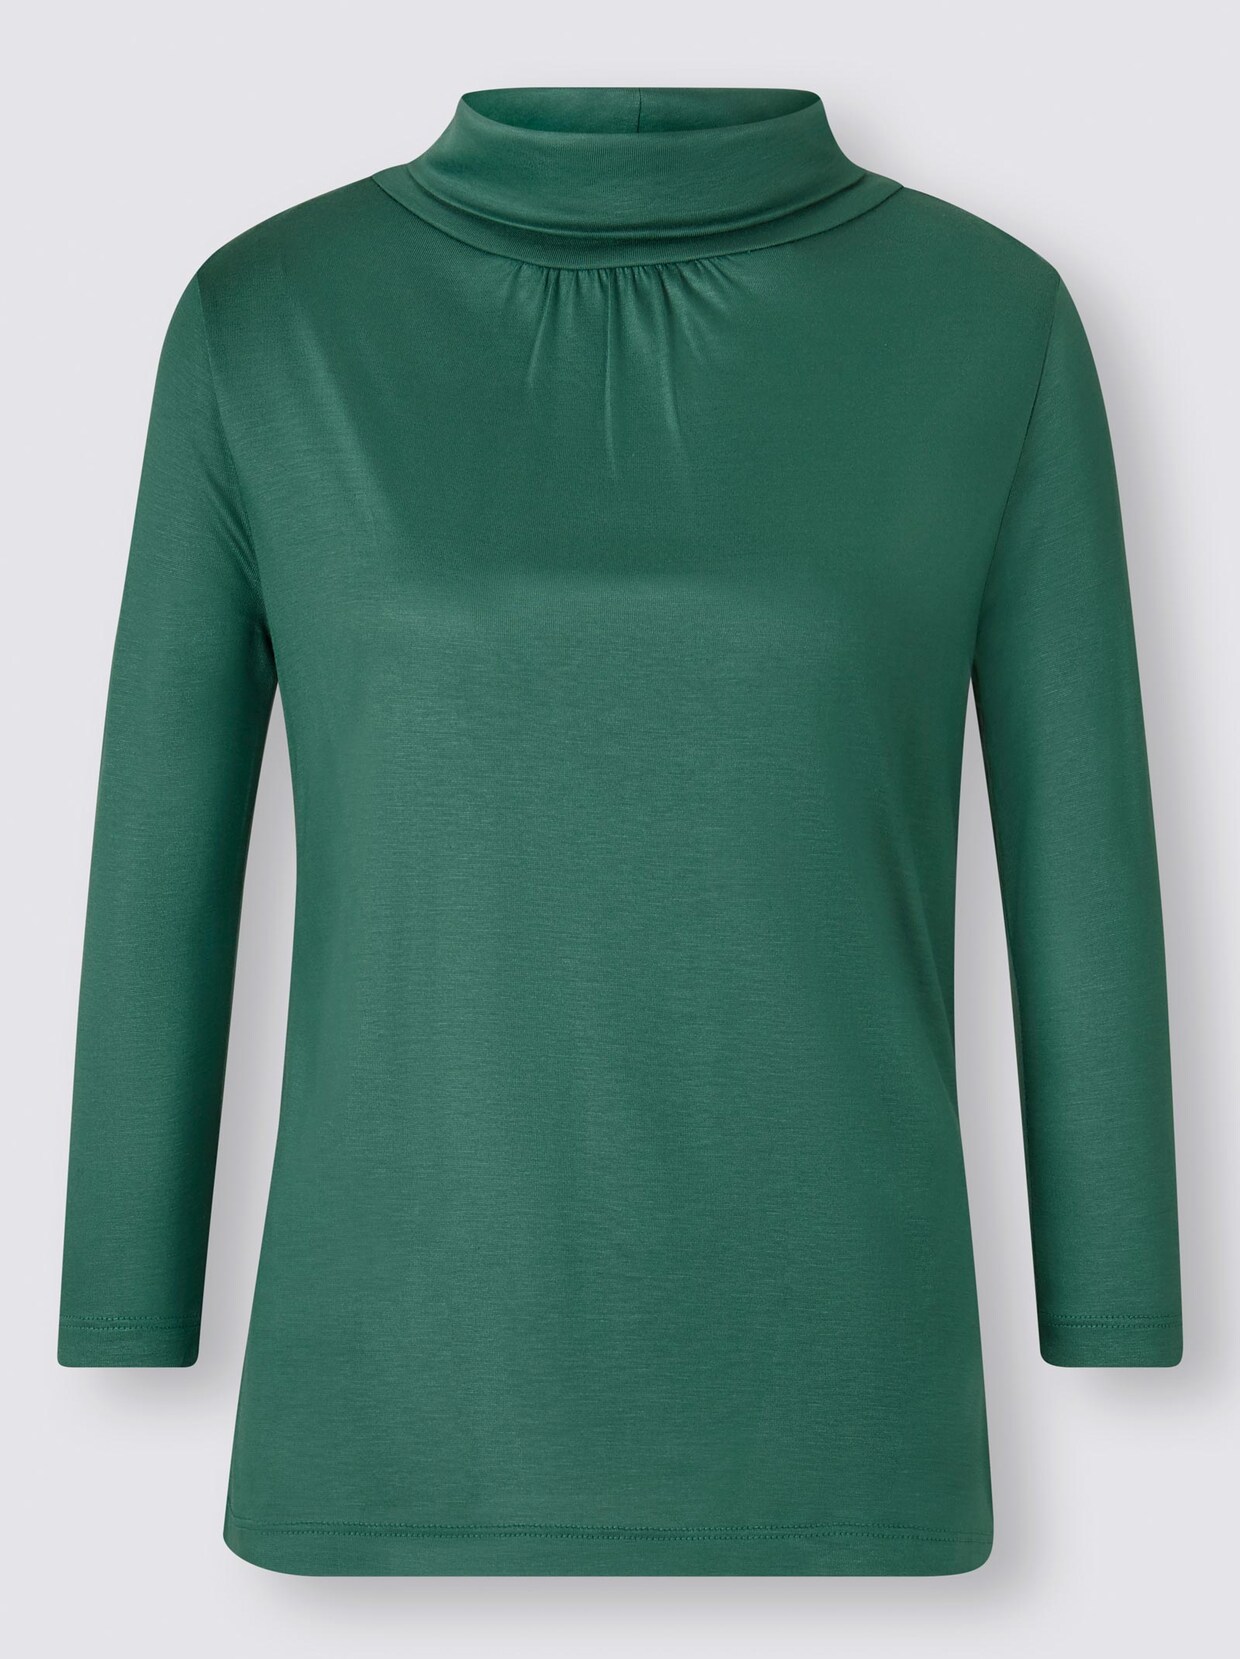 Ashley Brooke Shirt - grün